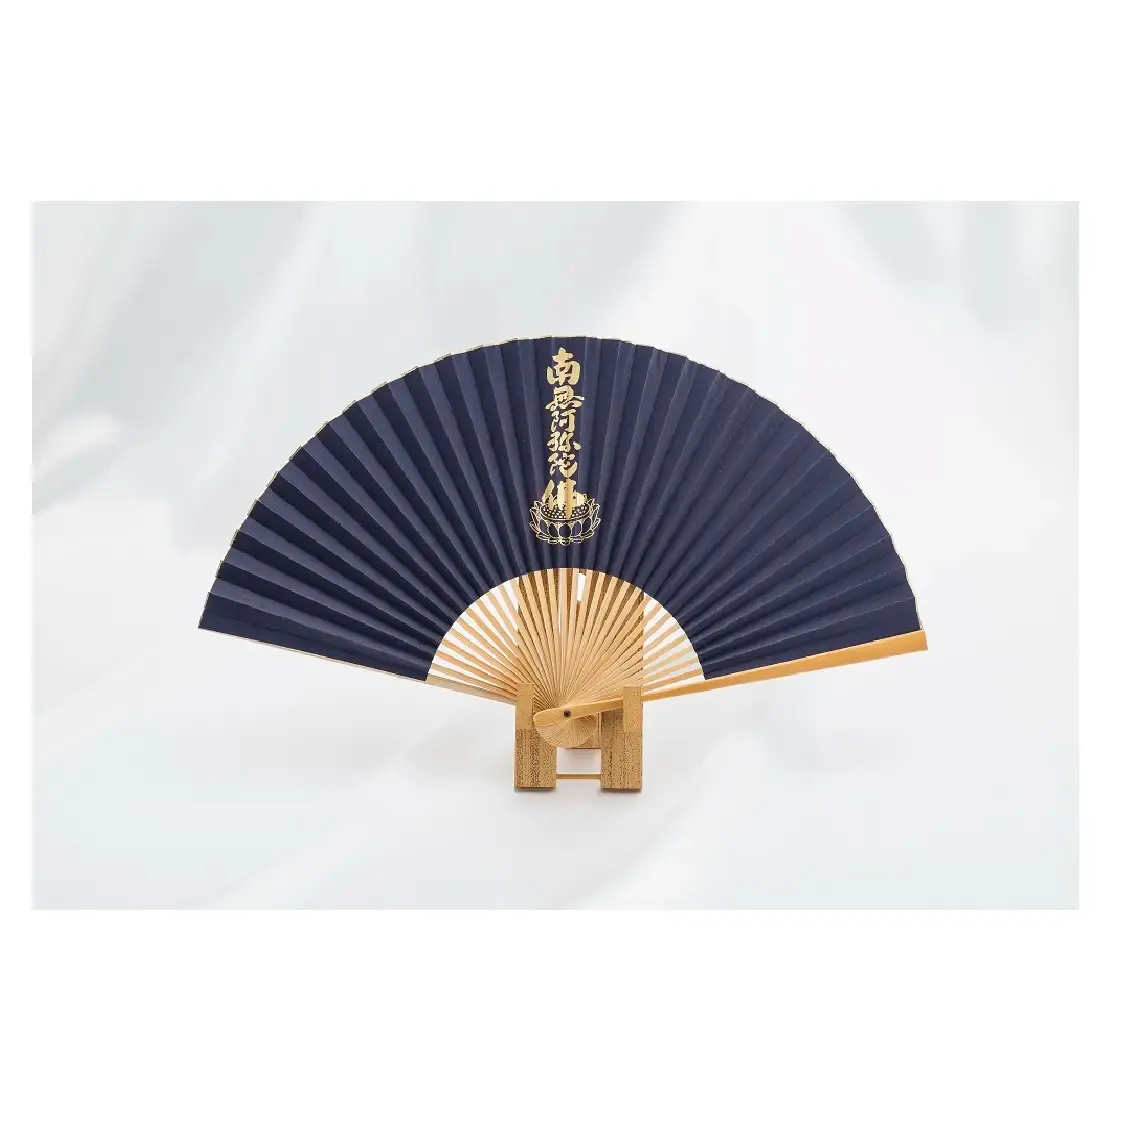 Presente bambu artesanato pequeno japonês personalizado foto impressão ventilador dobrável